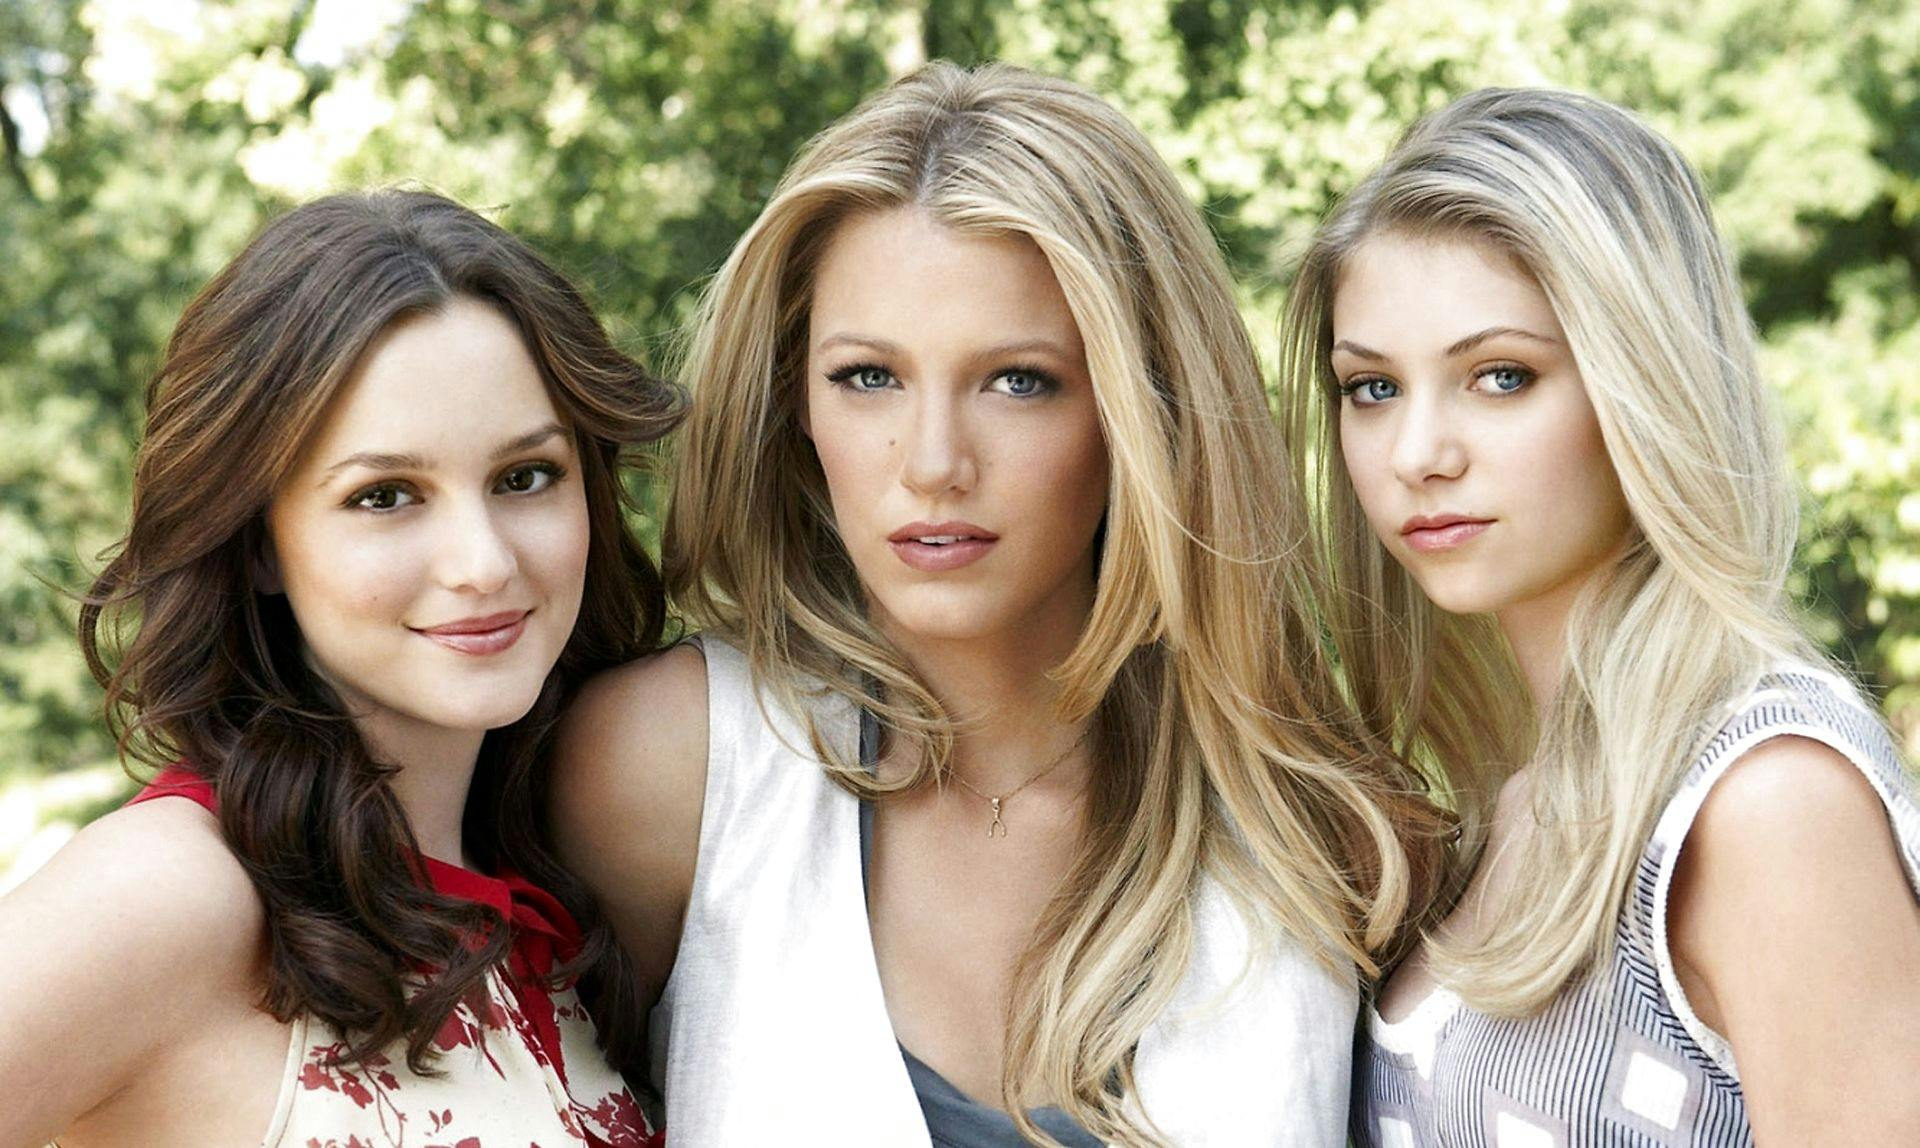 Fra venstre: Leighton Meester, Blake Lively og Taylor Momsen fra den hyperpopulære ungdomsserie "Gossip Girl", der havde premiere i 2007 og kørte frem til 2012.&nbsp;
